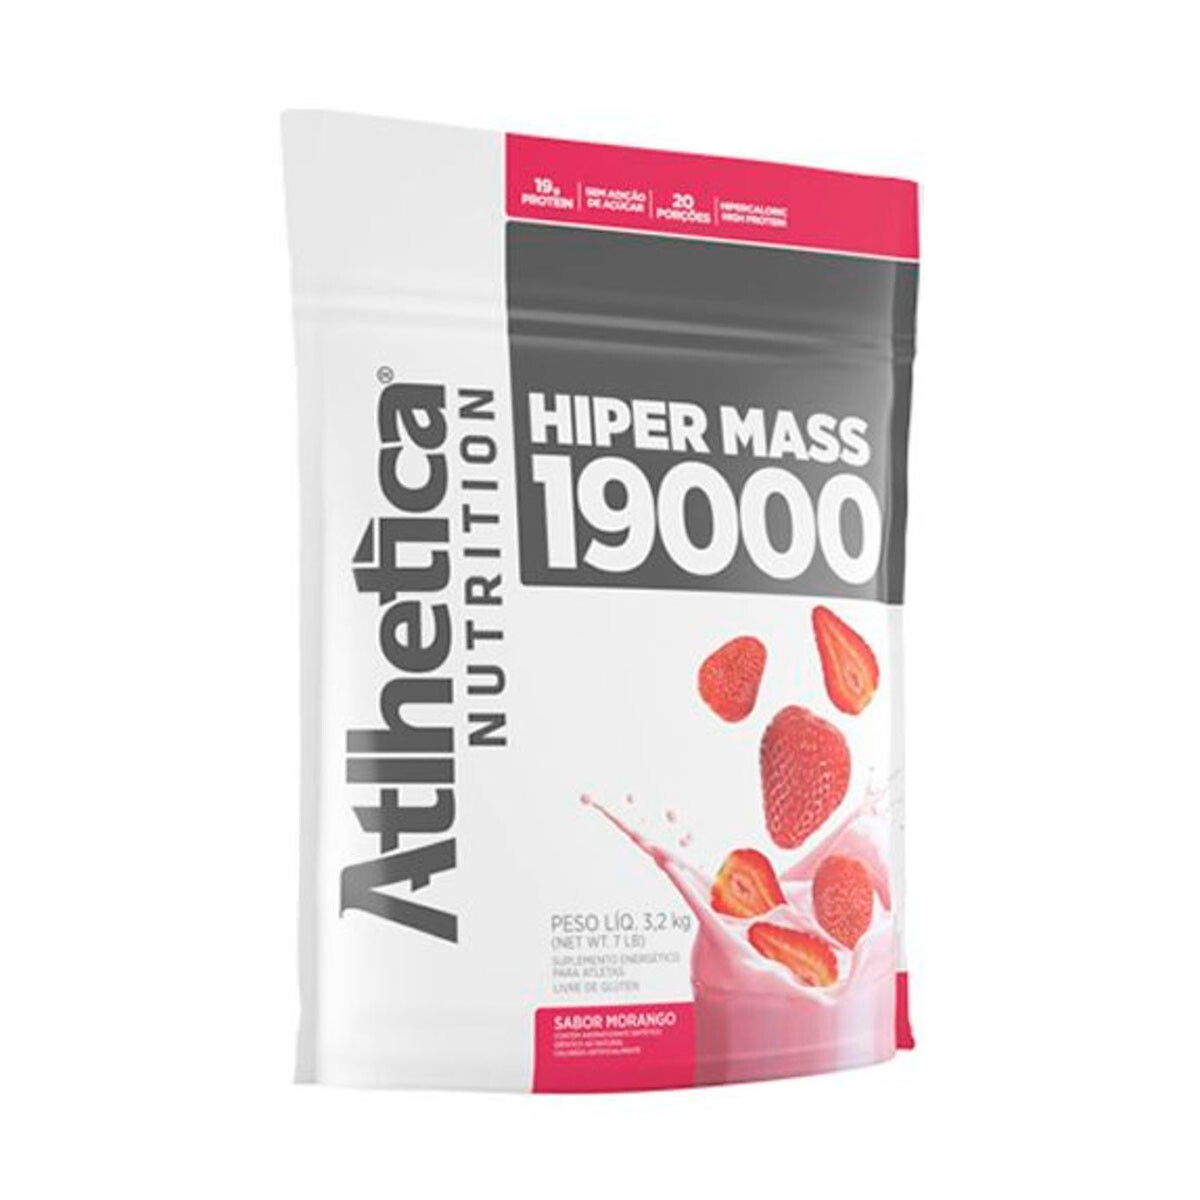 Atlhetica Hiper Mass 19000 3.2kg - Frutilla 